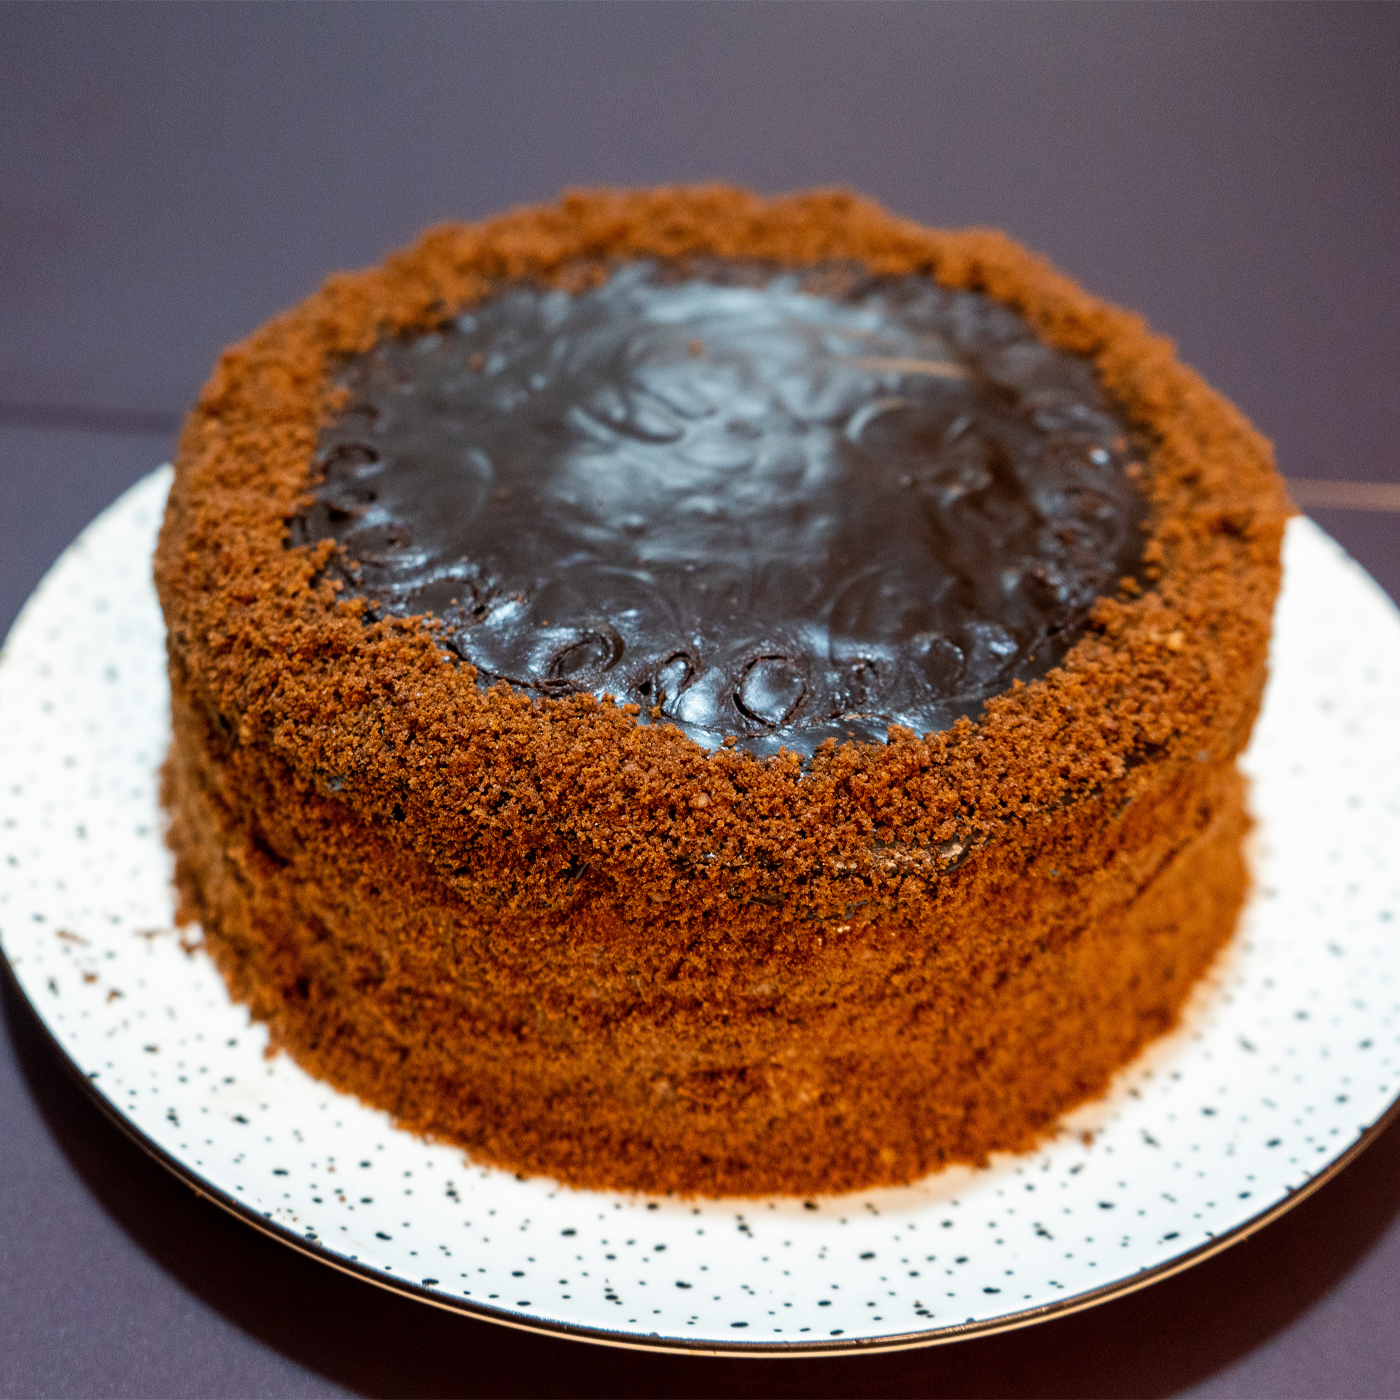 Пражский торт (торт Прага) — рецепт с фото и видео